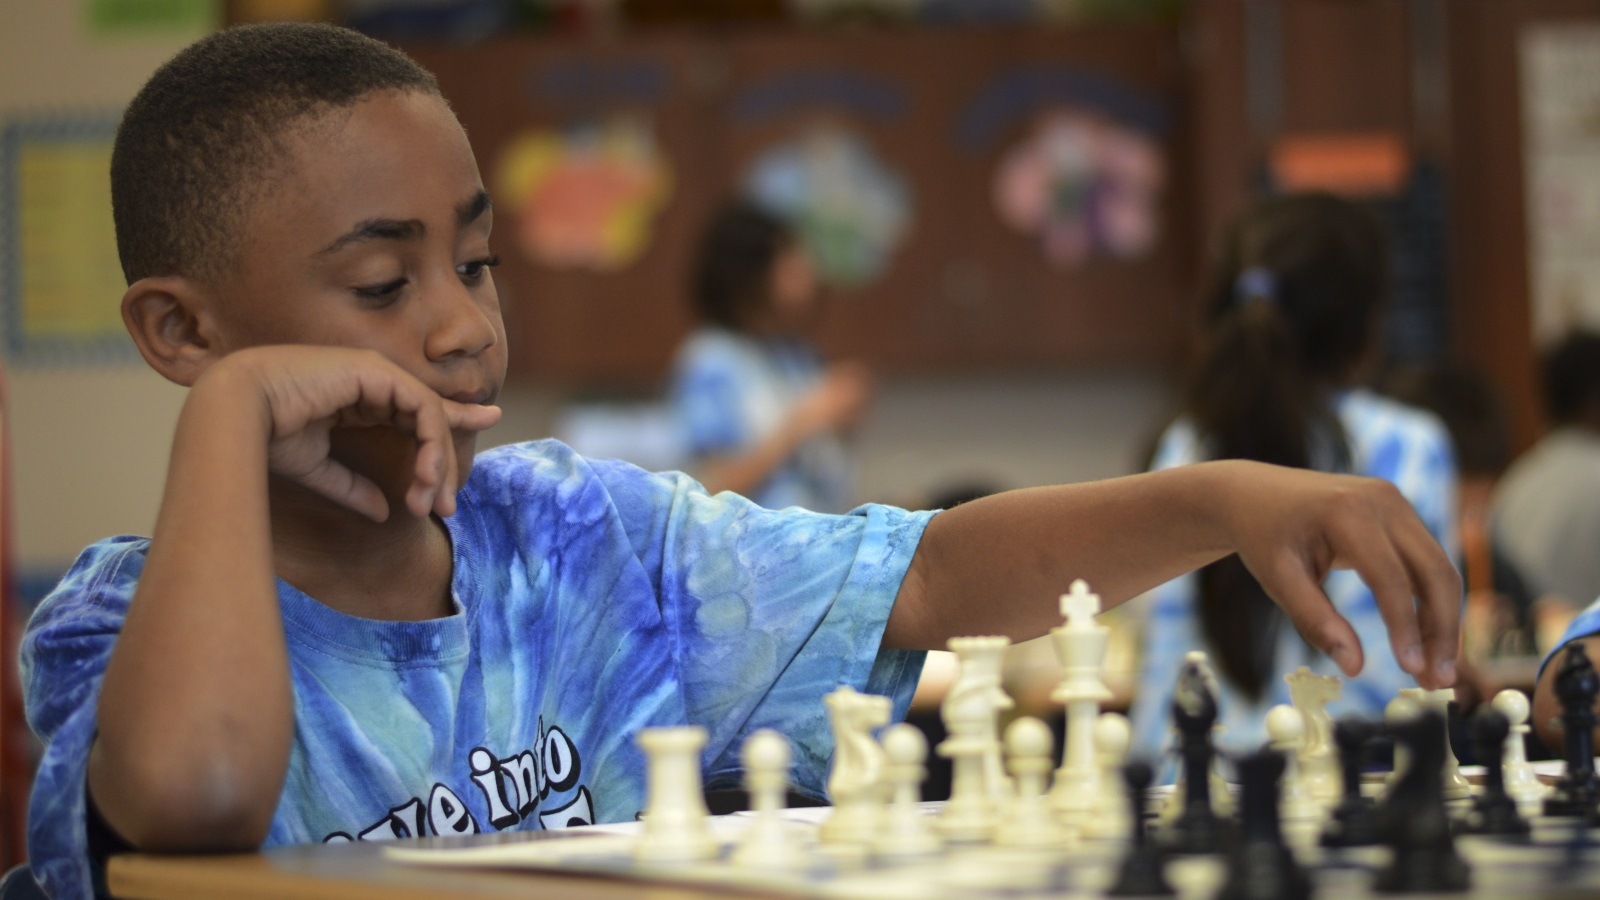 تُكسِب لعبة الشطرنج الطفل ثقة بالنفس، وتقوي علاقاته إذا ما مارسها مع مجموعة من أصدقائه، ويتعلم من خلالها روح المنافسة وتقبل الهزيمة